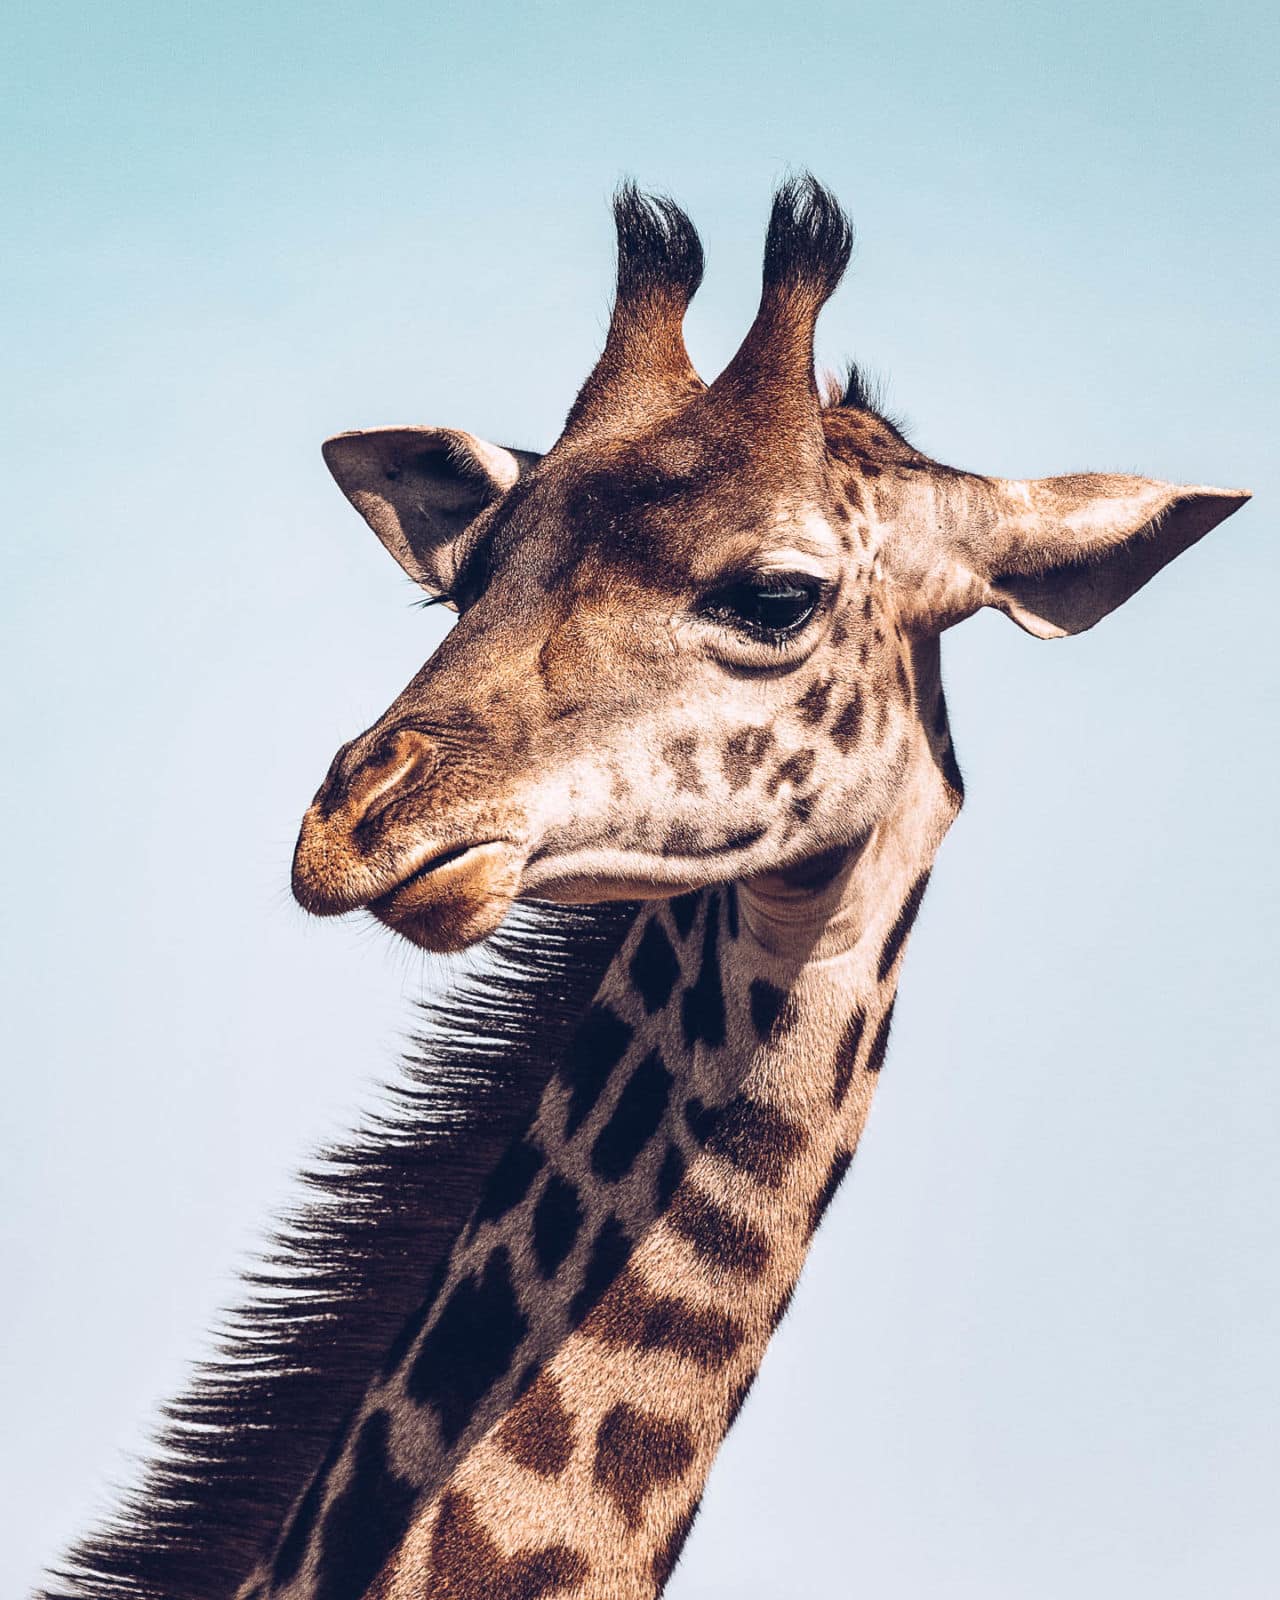 Do all giraffes have horns?